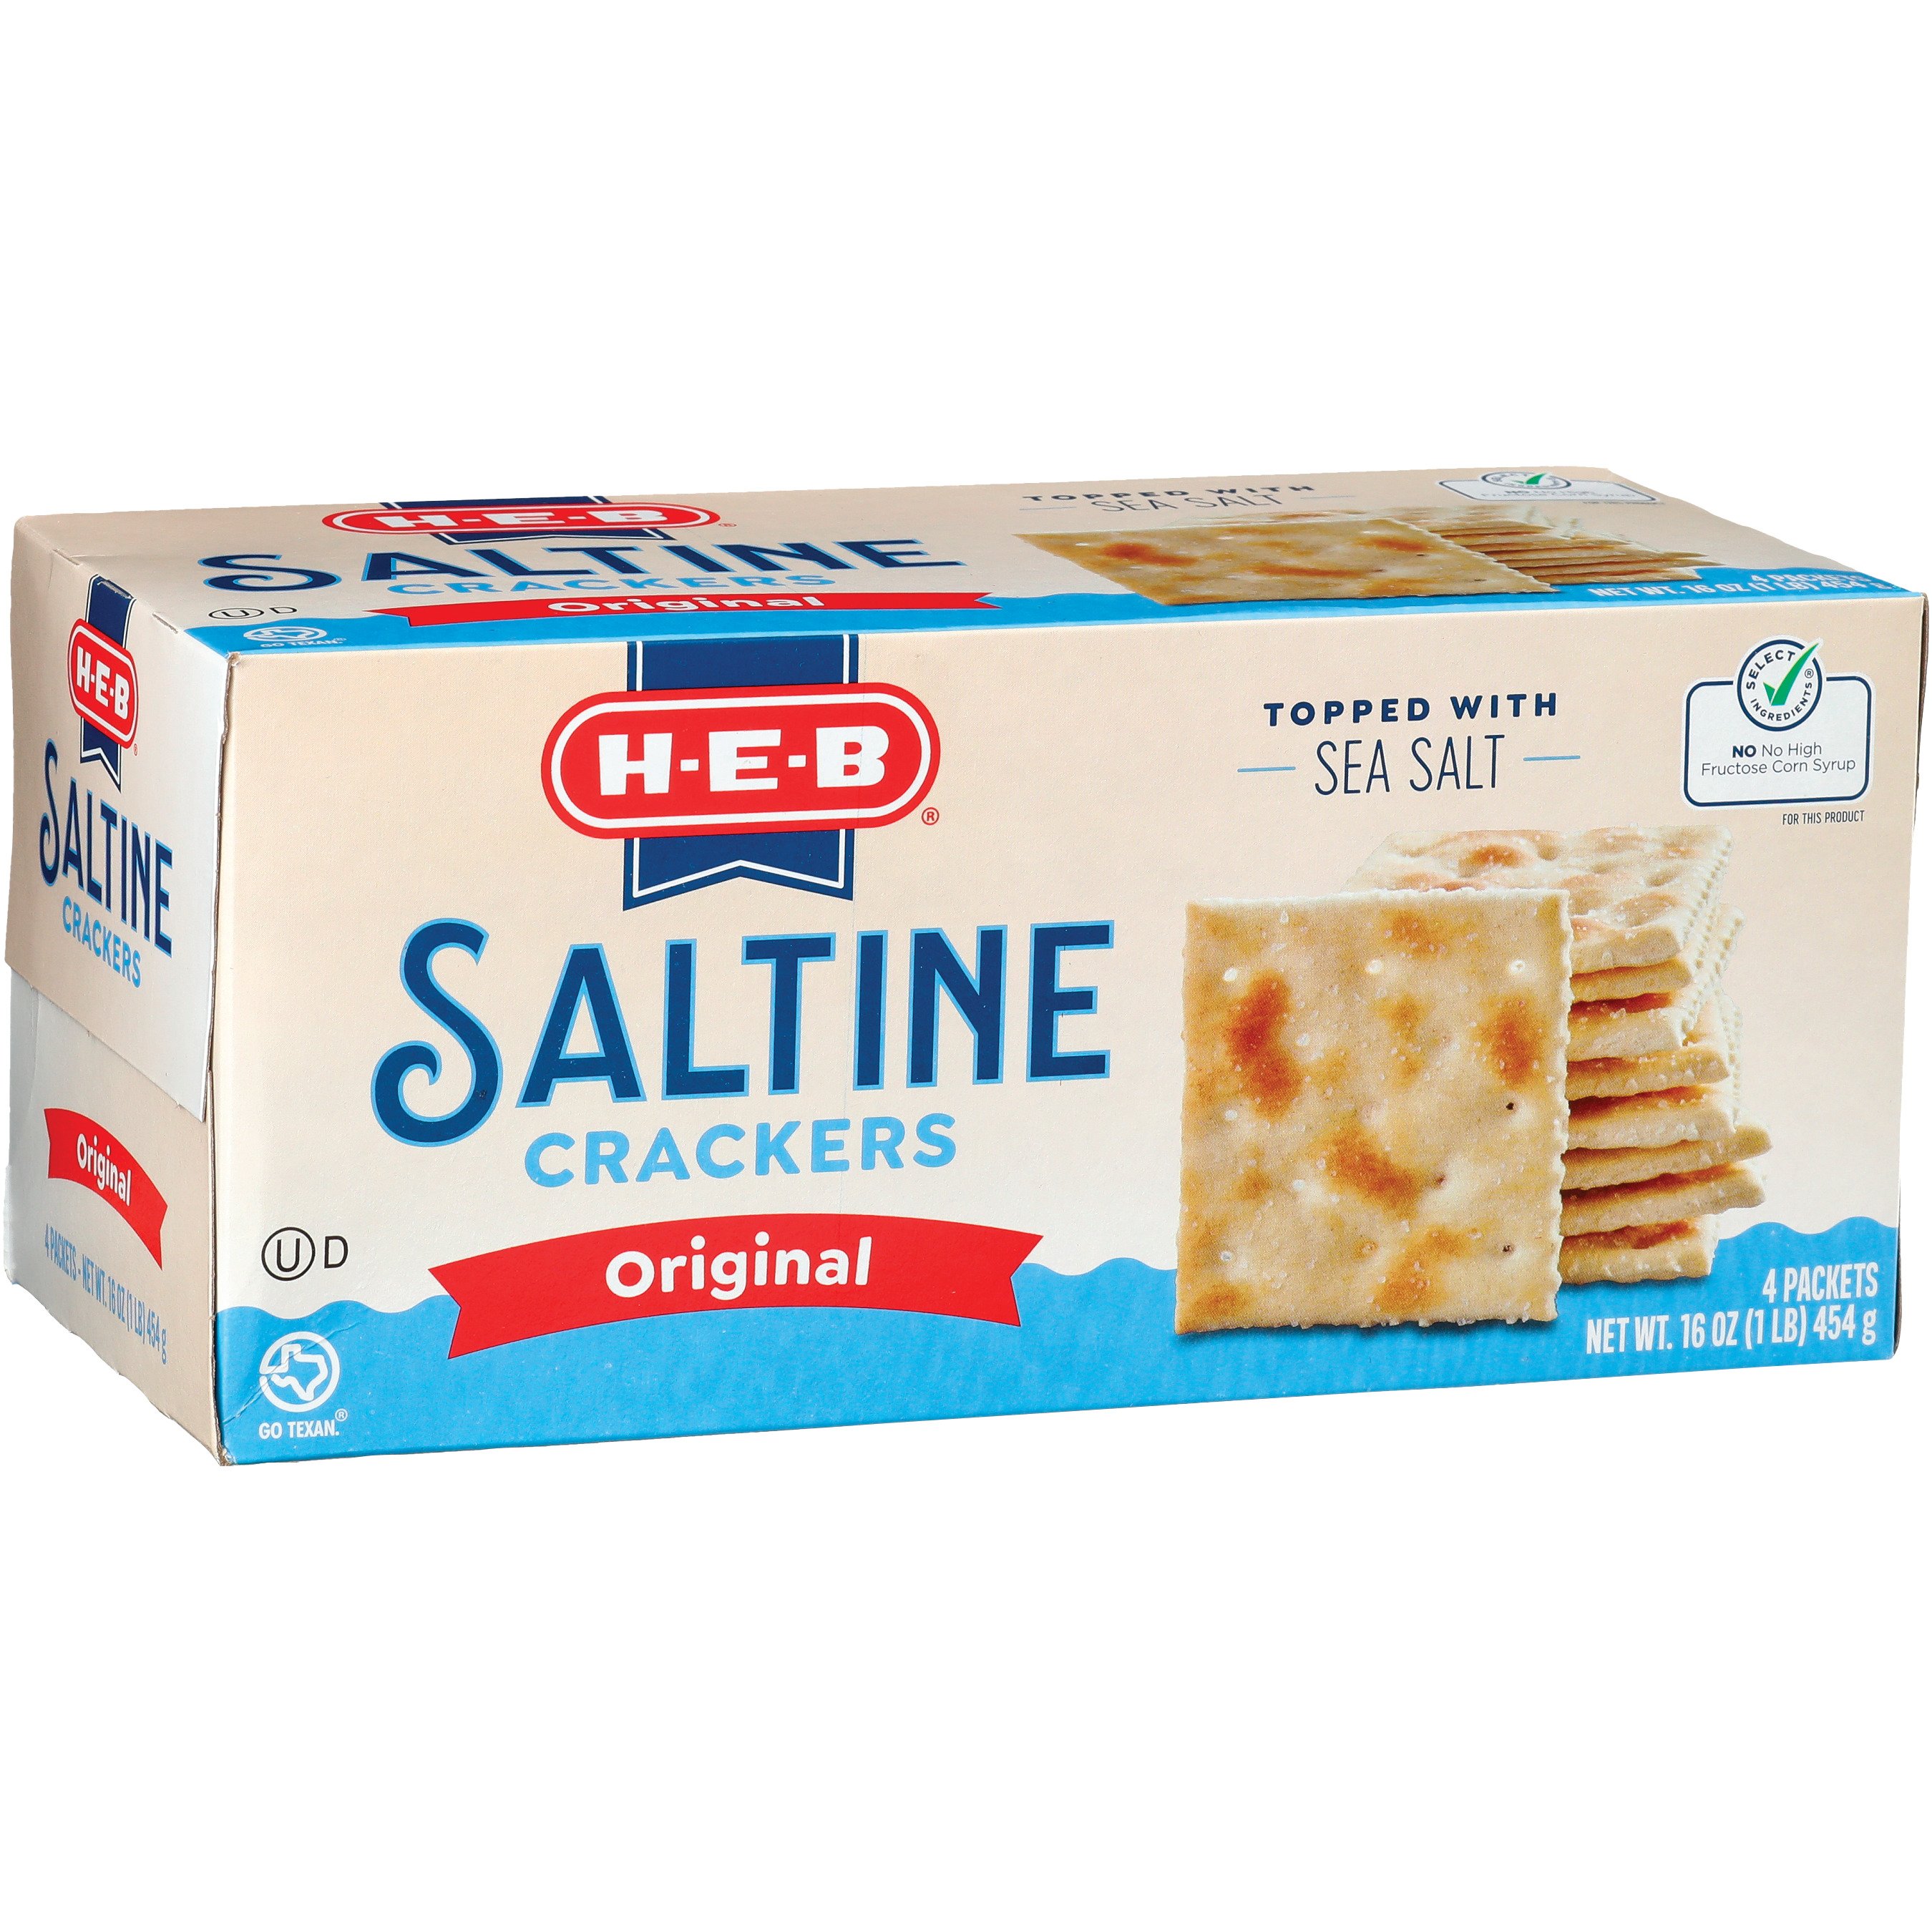 H-E-B Saltine Crackers - Original